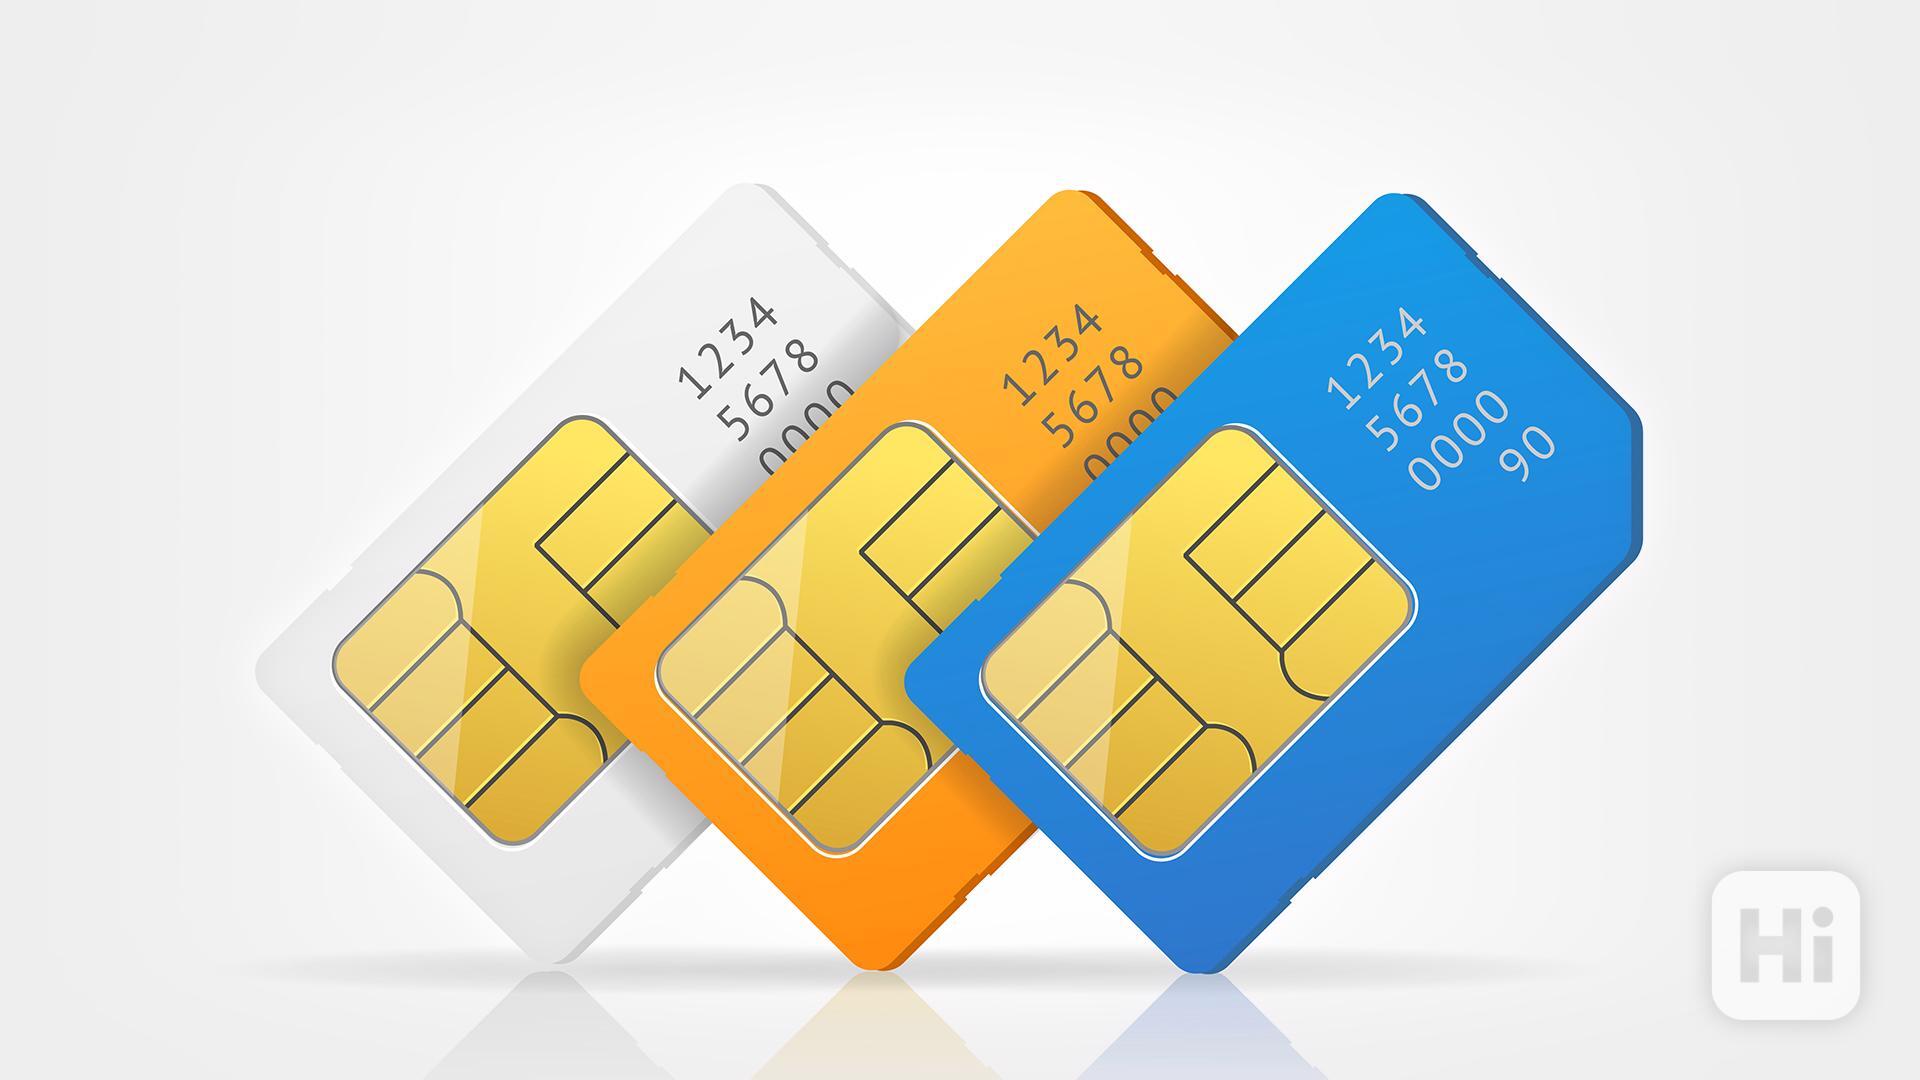 SIM karty s dobře zapamatovatelnými čísly (735 60 50 50...) - foto 1